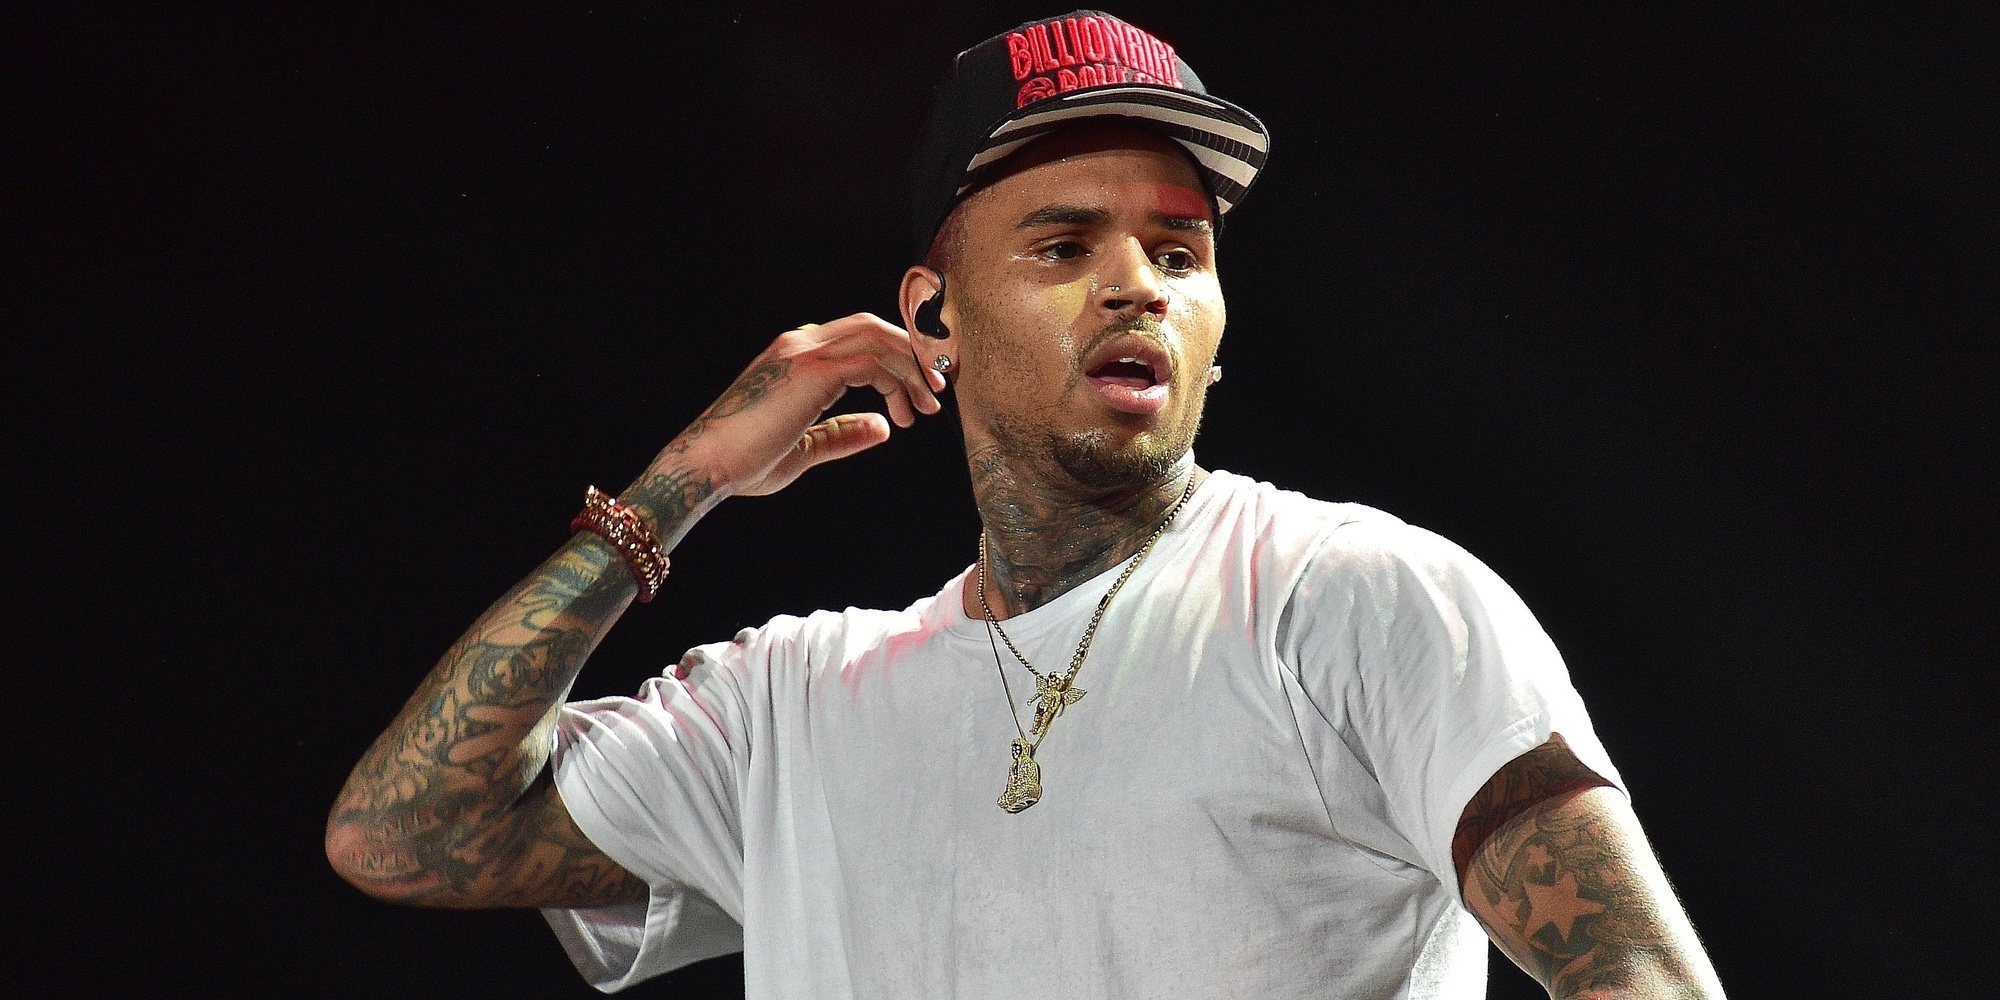 Chris Brown, arrestado en Florida después de un concierto